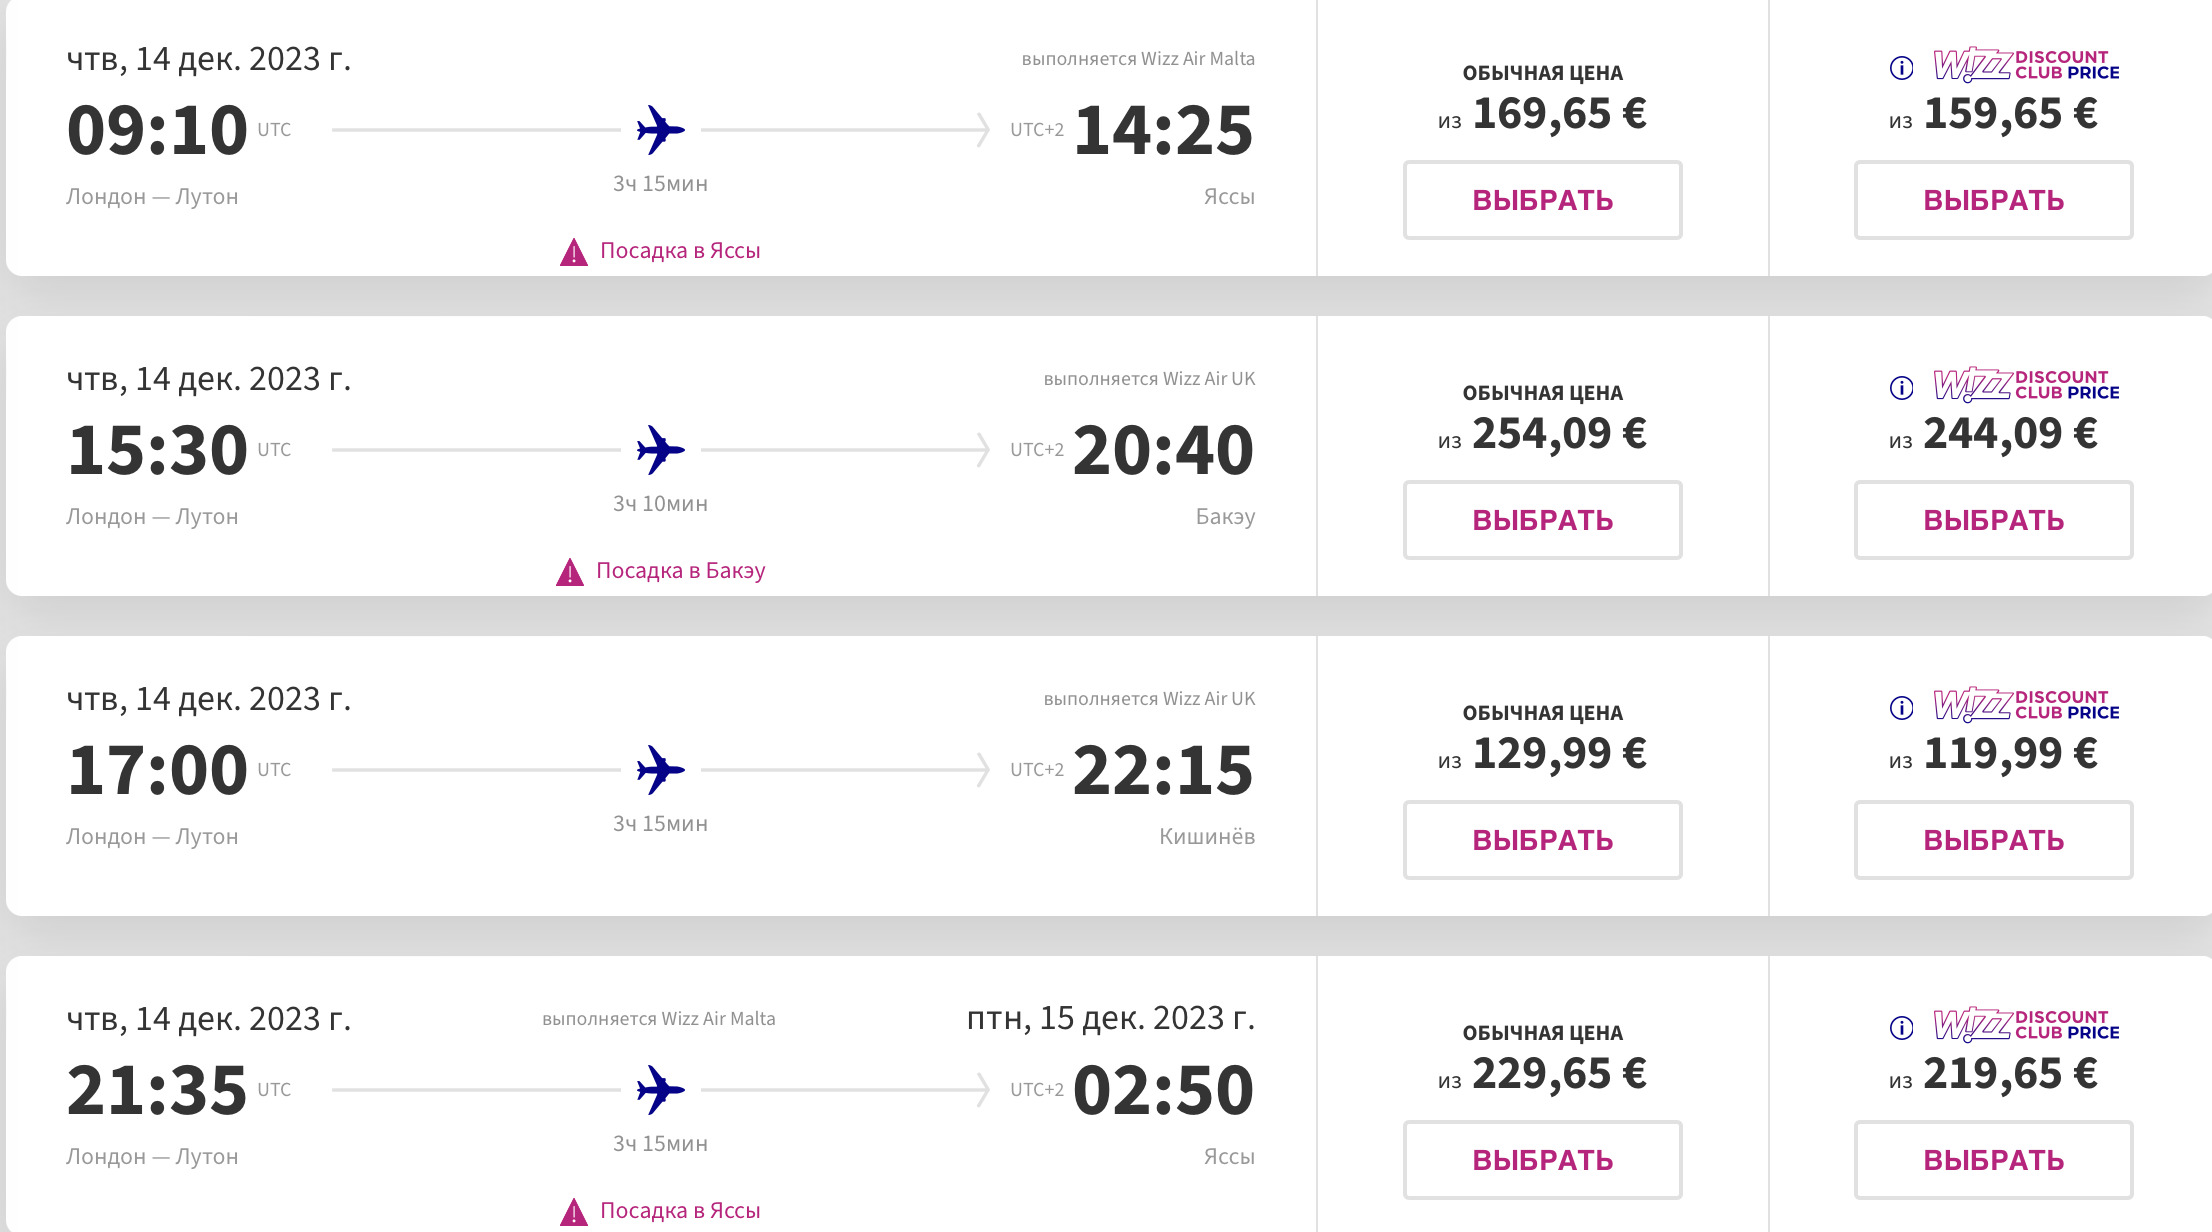 „Nu vă uitați la prețuri, urmează să fie ajustate”. Cât costă biletele Wizz Air pentru cele trei destinații care se lansează în decembrie